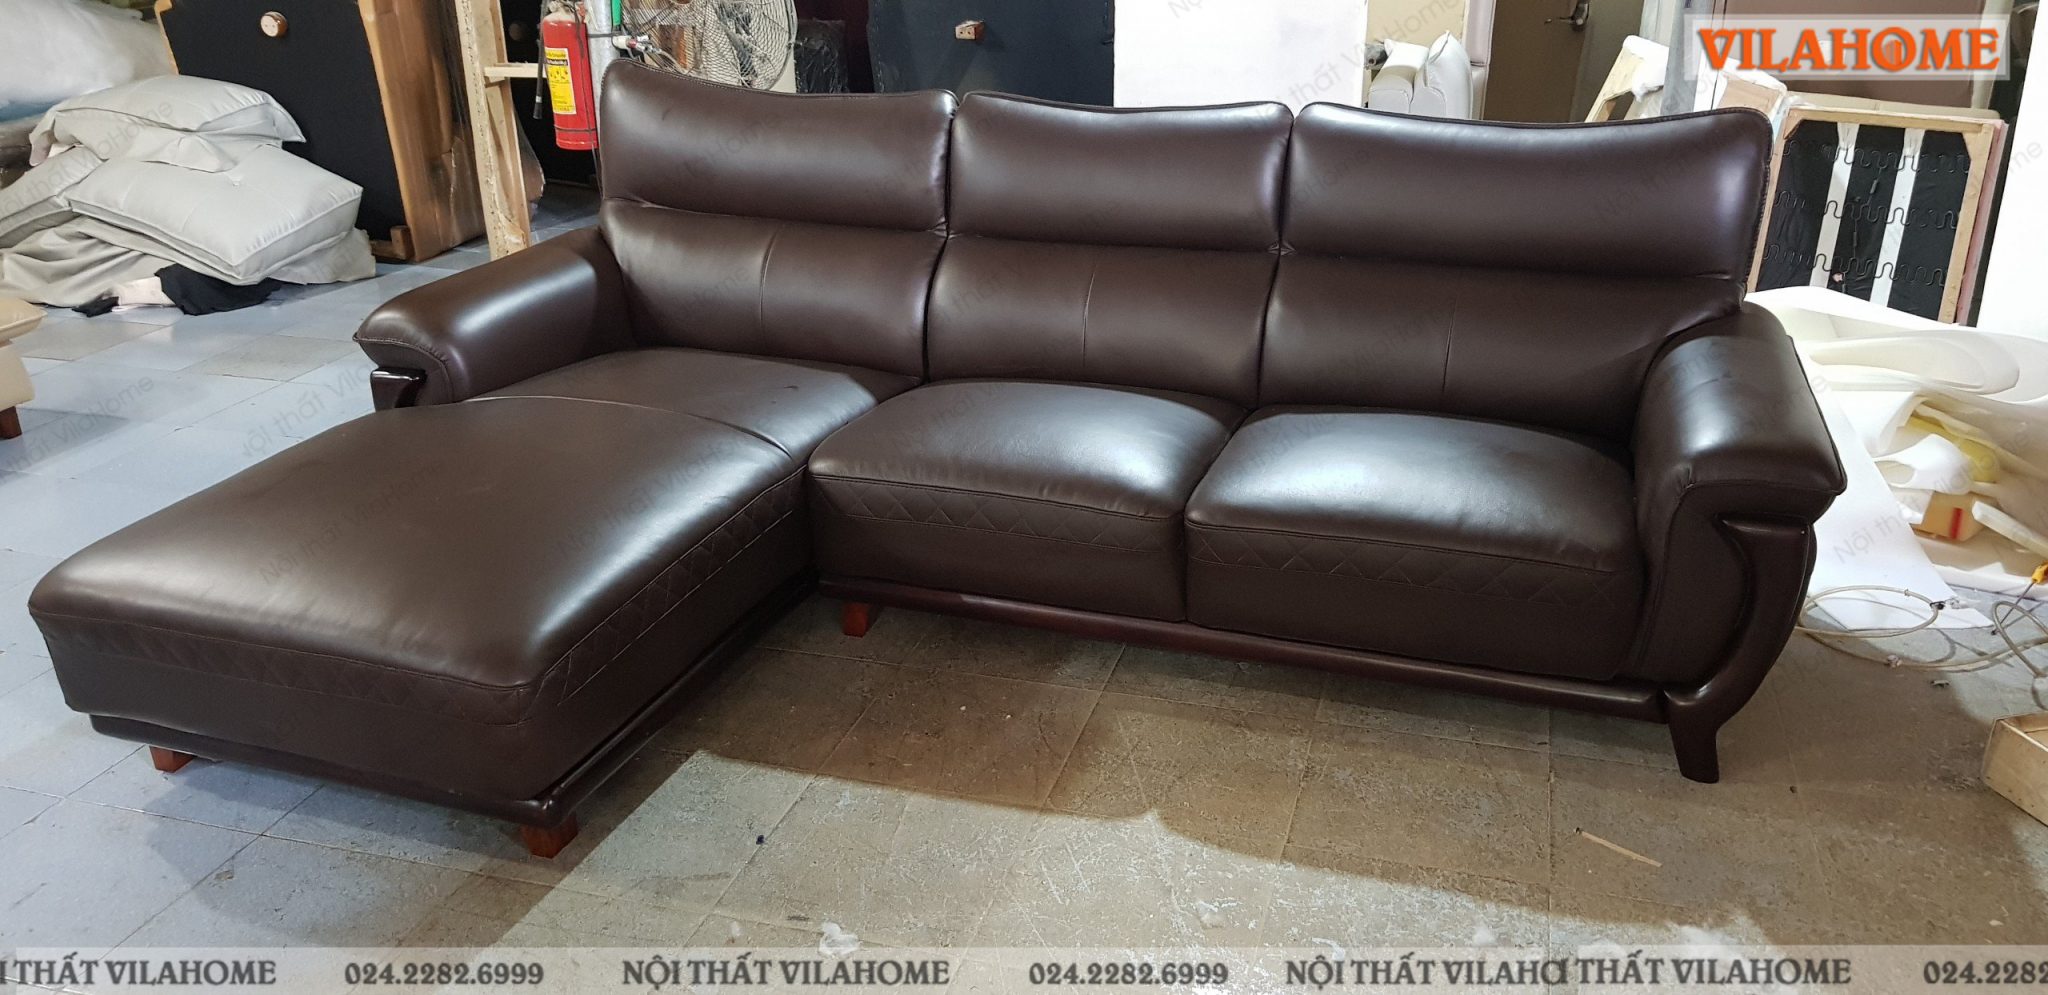 Mẫu ghế sofa nhập khẩu cho khách hàng ở Dong Mac, Hai Ba Trung.